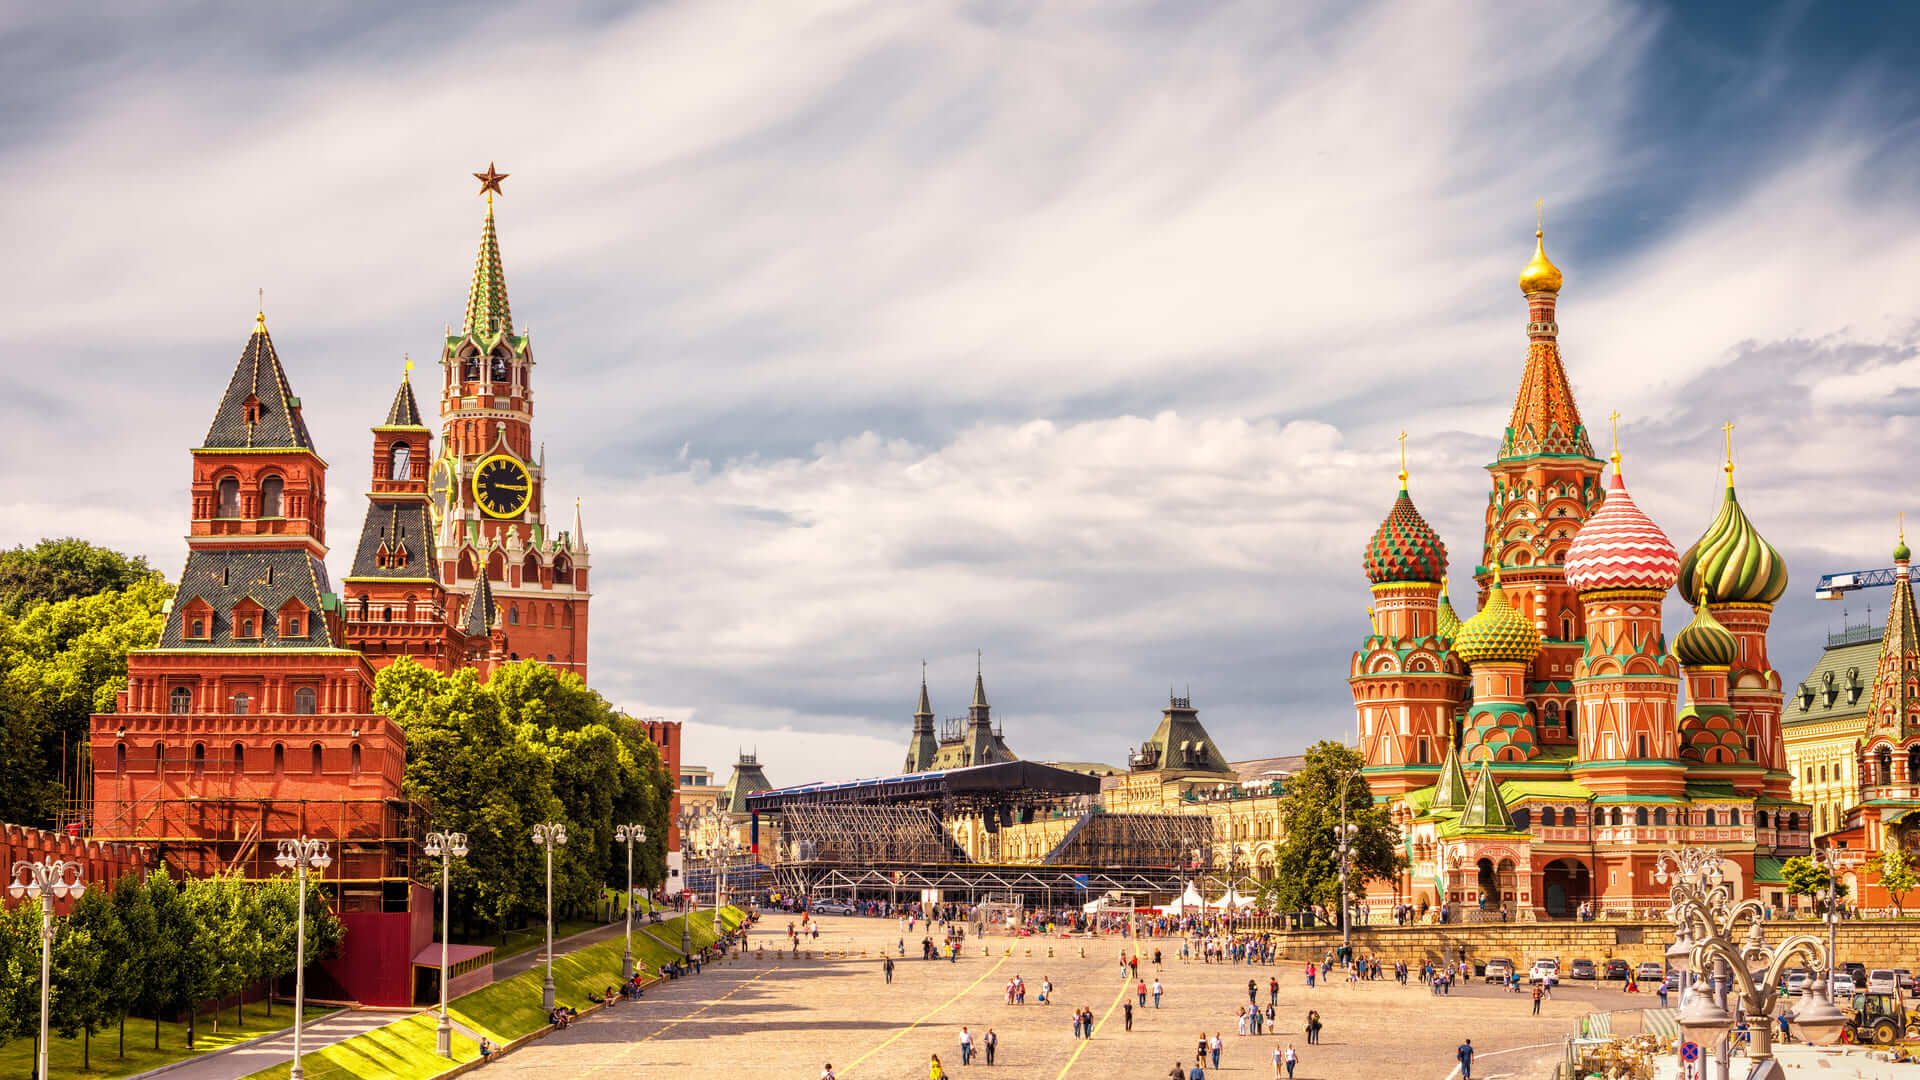 Kremlin de Moscou et de la cathédrale Saint-Basile sur la Place Rouge, Moscou, Russie. L'ancien Kremlin de Moscou est la principale attraction touristique de la ville. Belle vue panoramique sur le coeur de Moscou par beau temps.